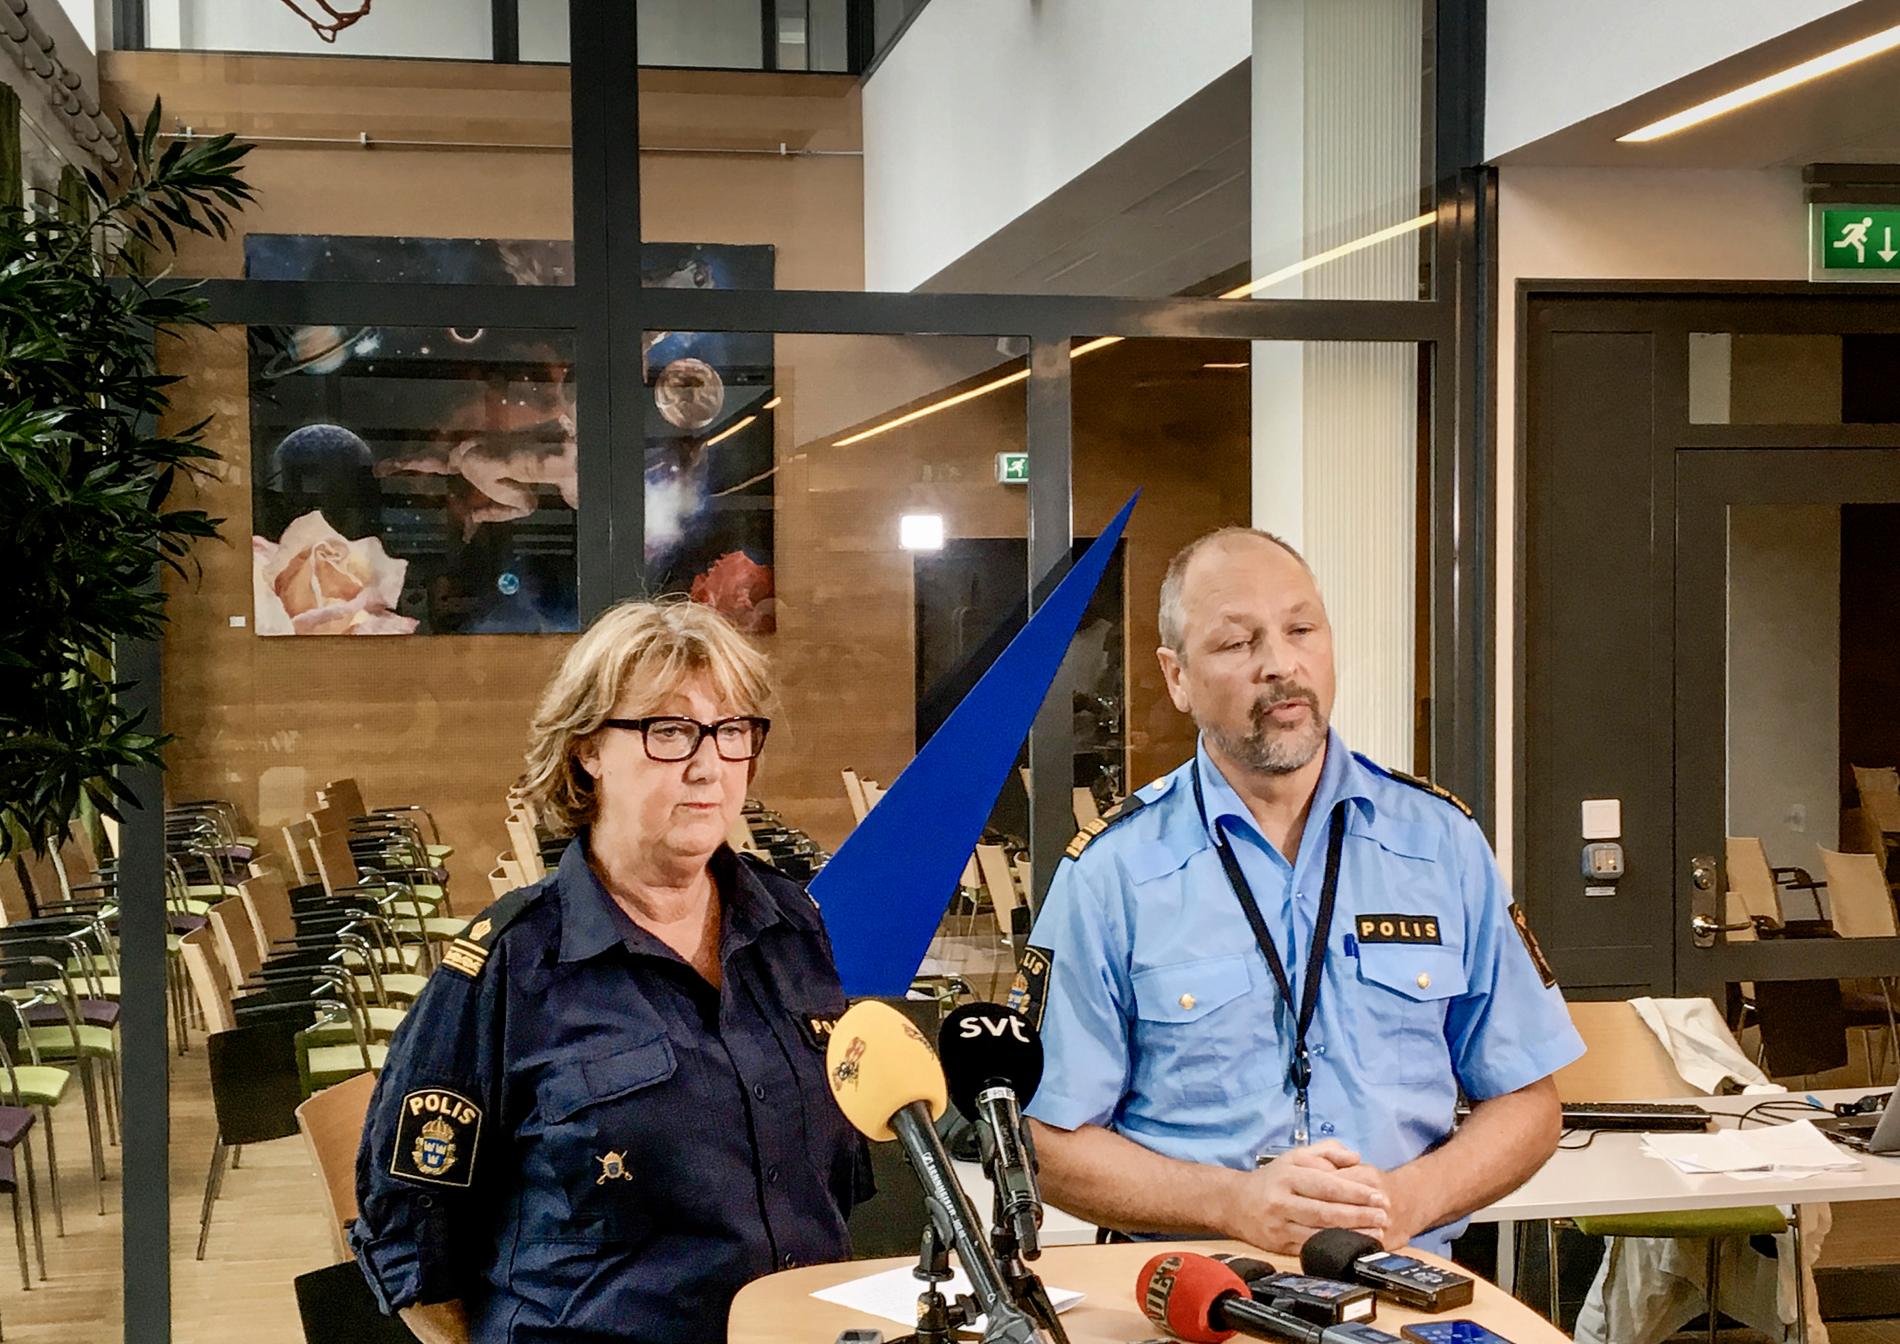 Ewa-Gun Westford, pressinformatör vid polisen, och Erik Jansåker, lokalpolisområdeschef i Malmö söder, vid en pressträff om det senaste mordet i Malmö.